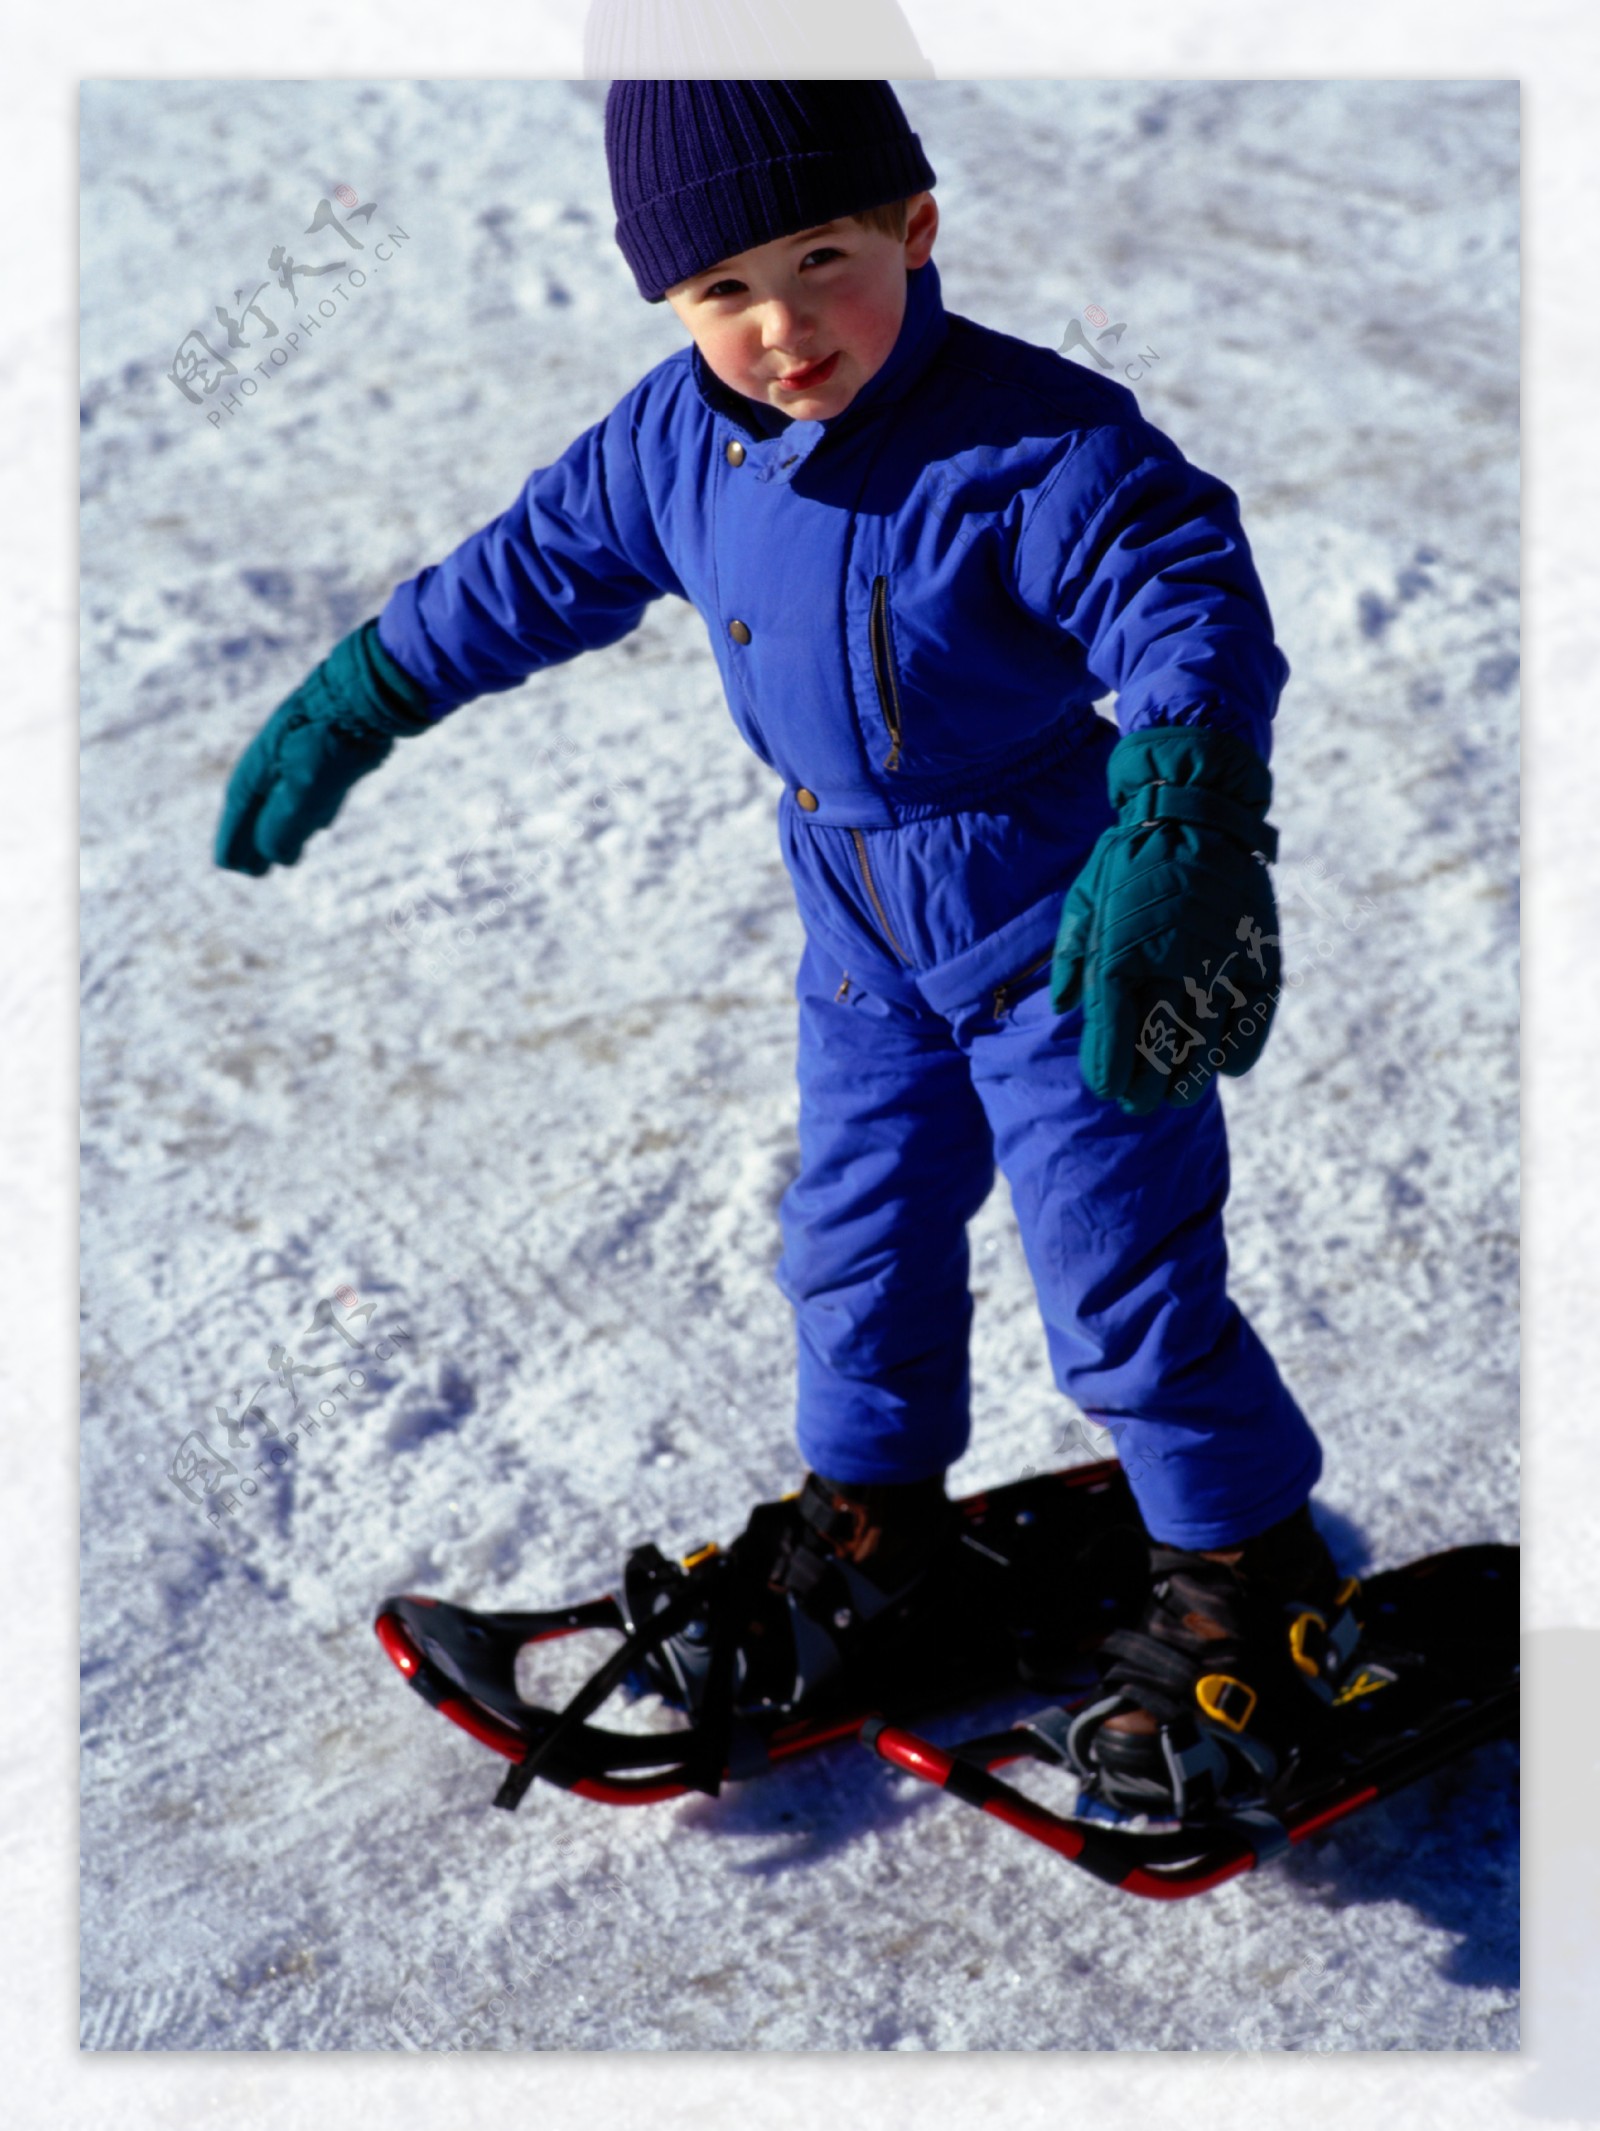 正在滑雪的小男孩图片